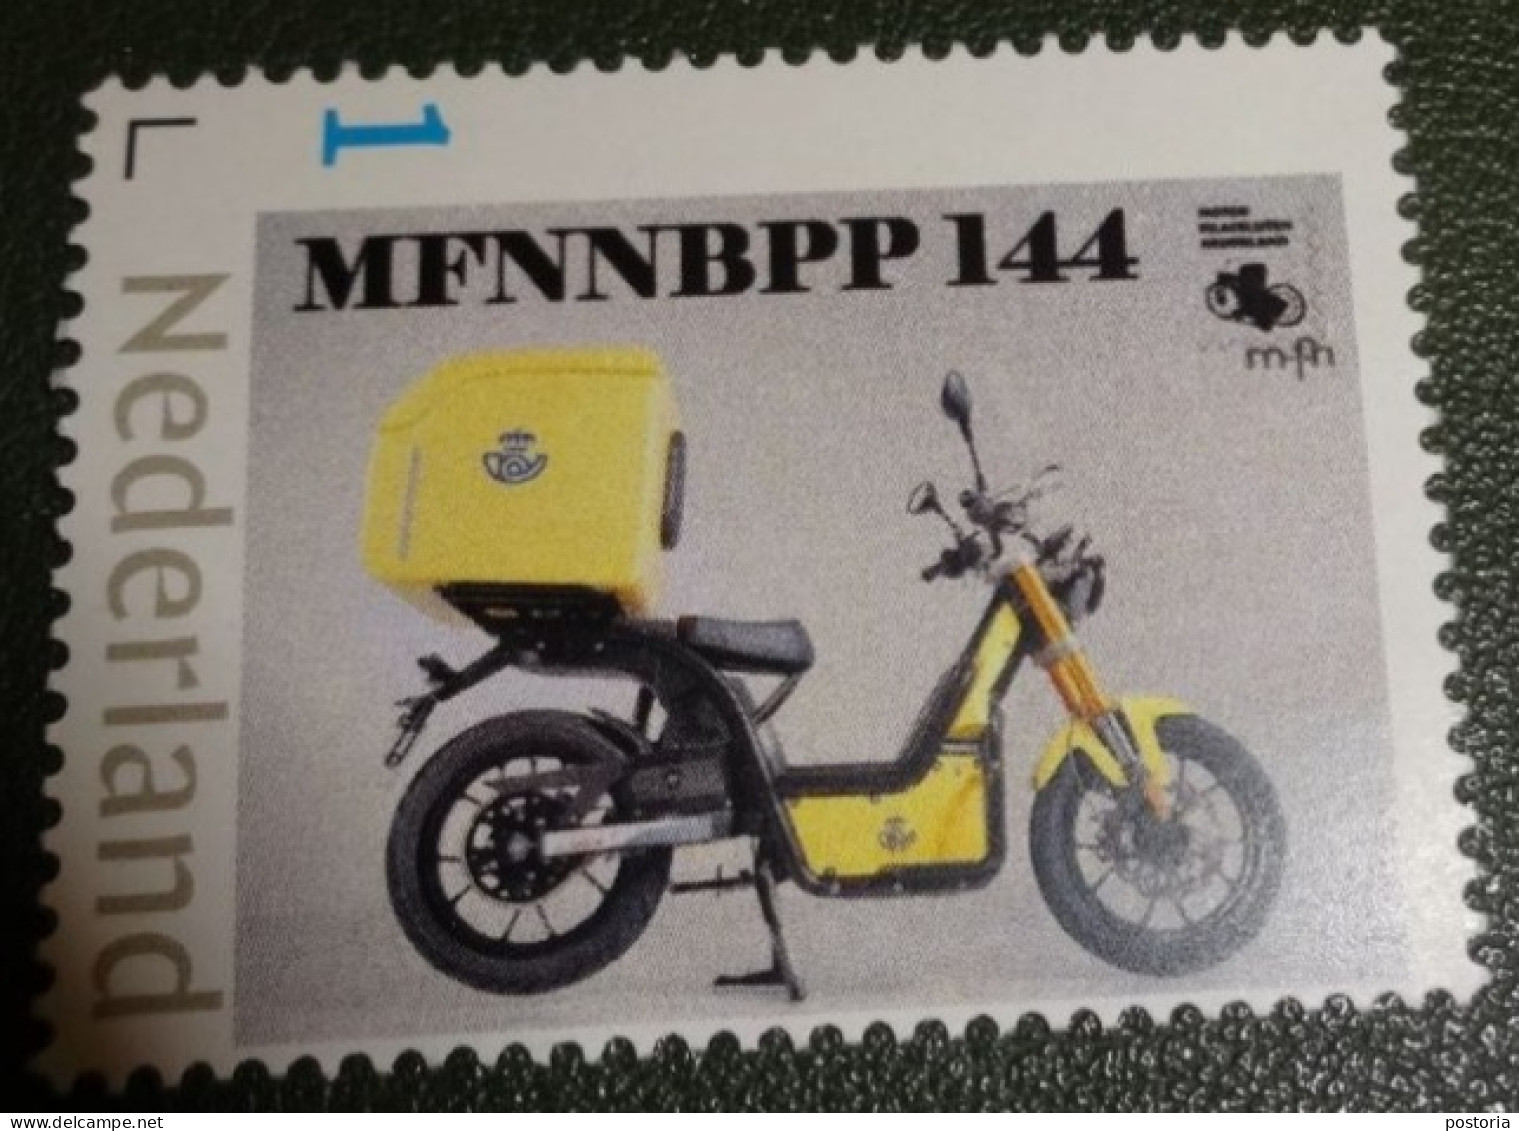 Nederland - NVPH - Persoonlijke - Postfris - MNH - Motorfilatelisten - MFNNBPP 144 - Personalisierte Briefmarken